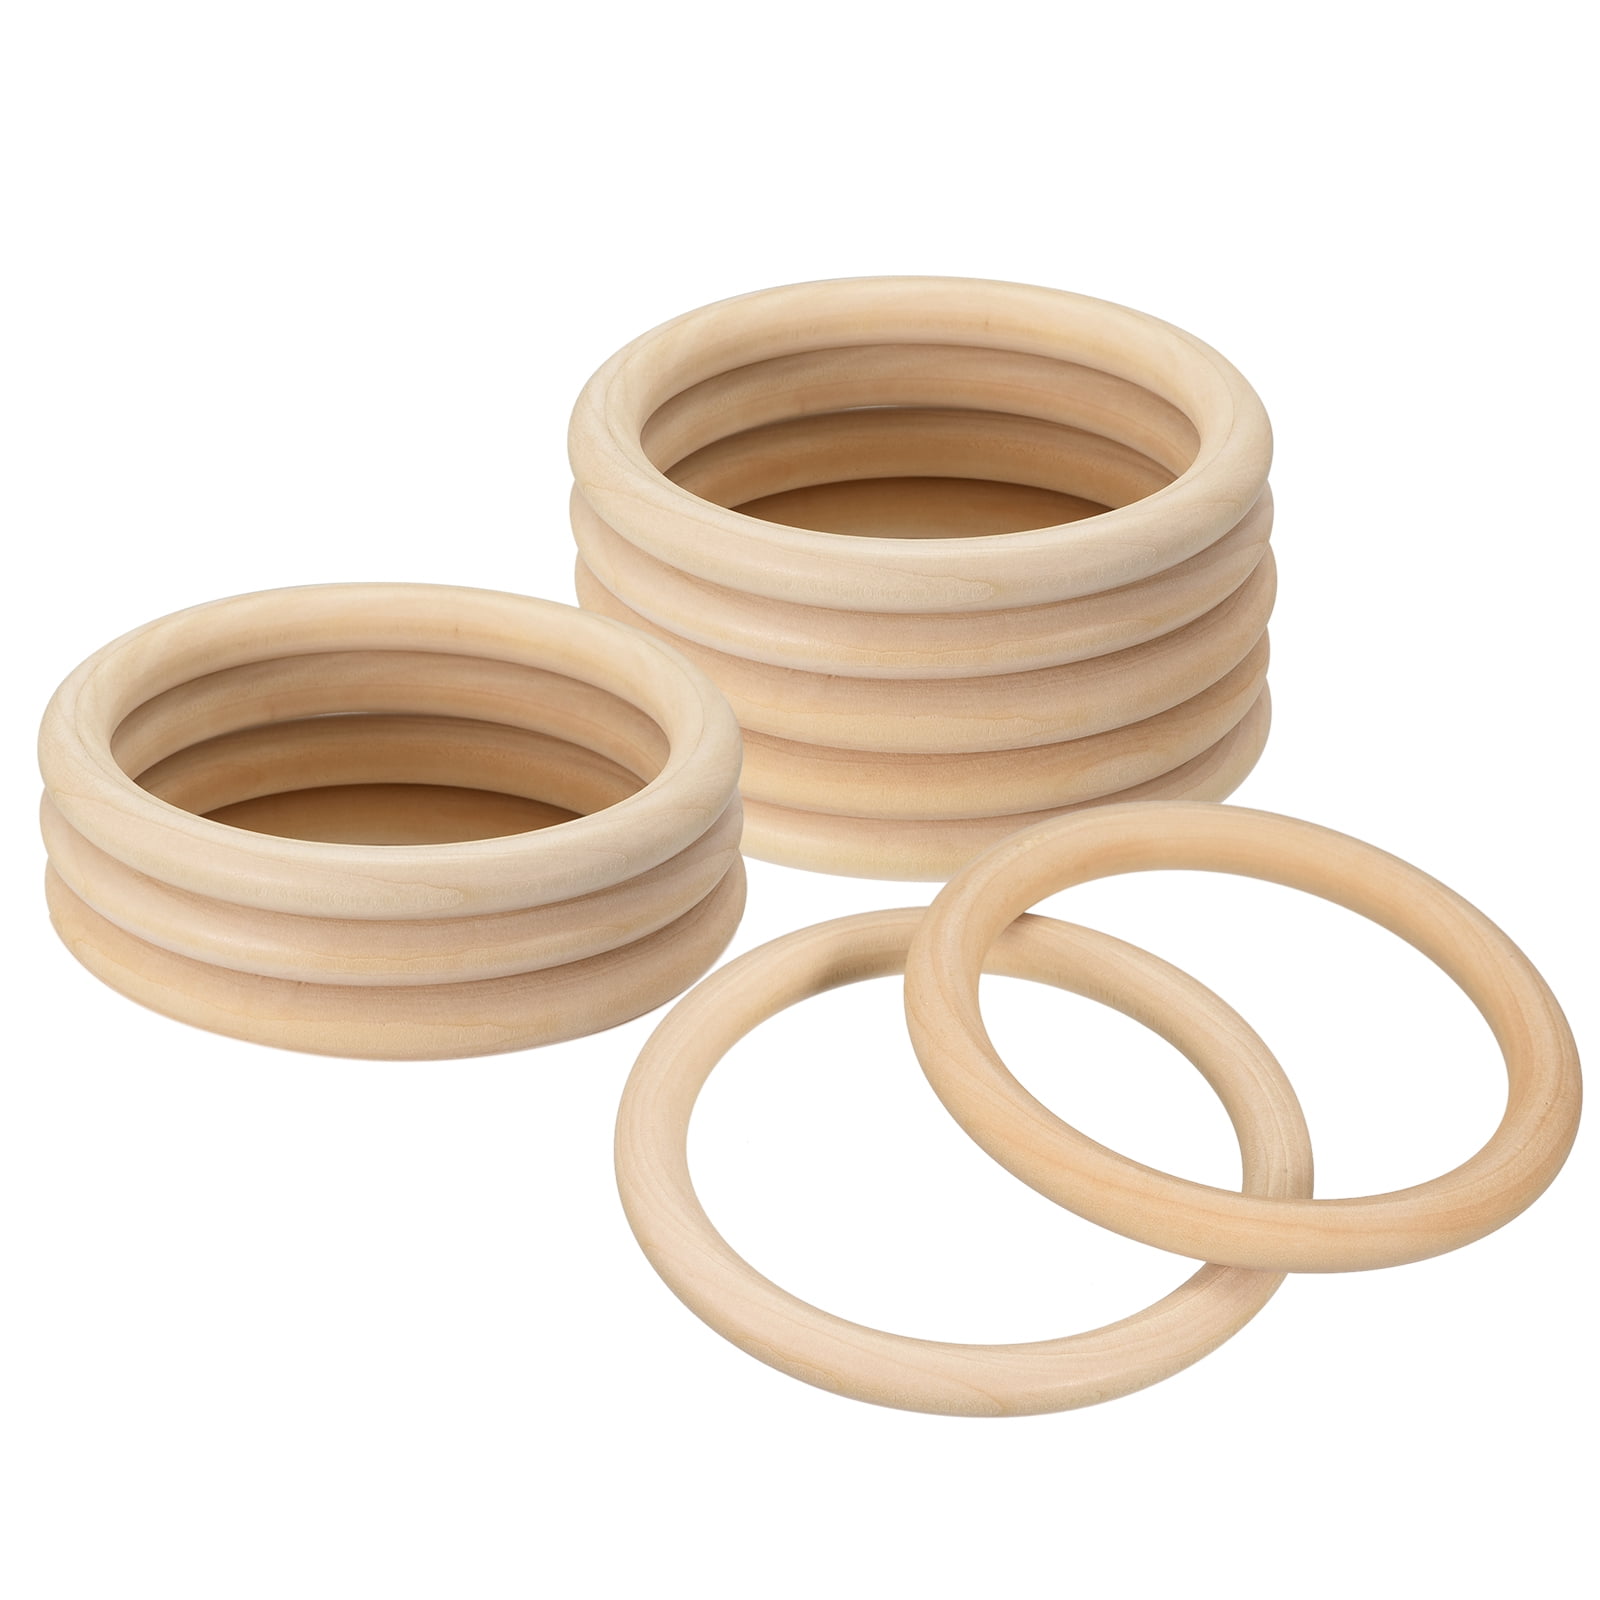 Macrame Rings - Wood Look Plastic